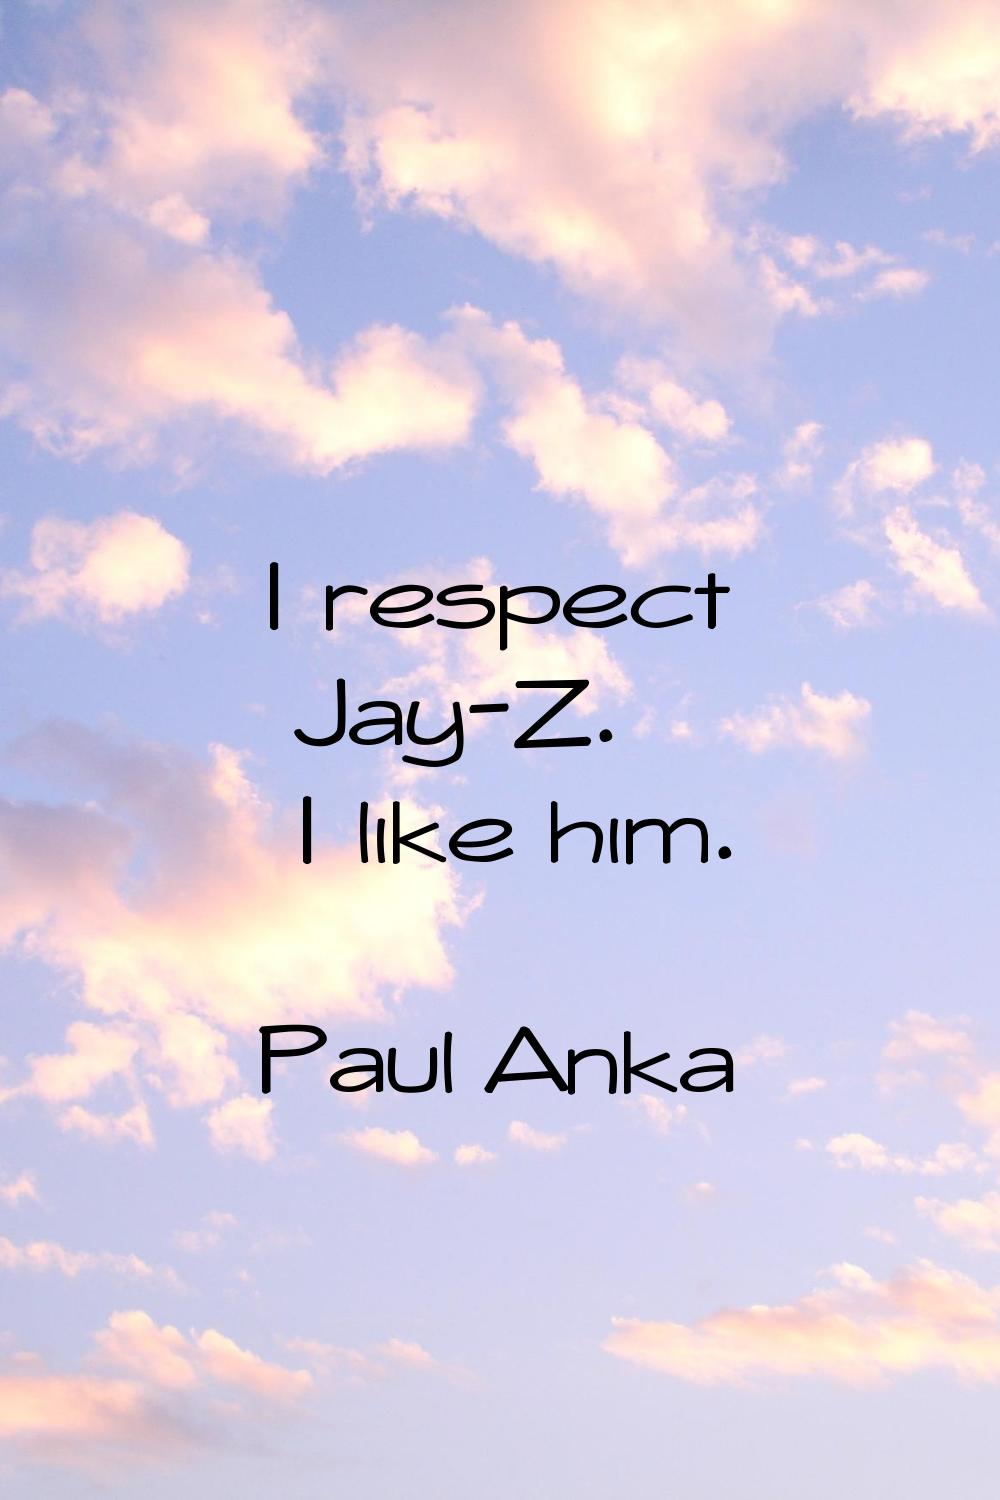 I respect Jay-Z. I like him.